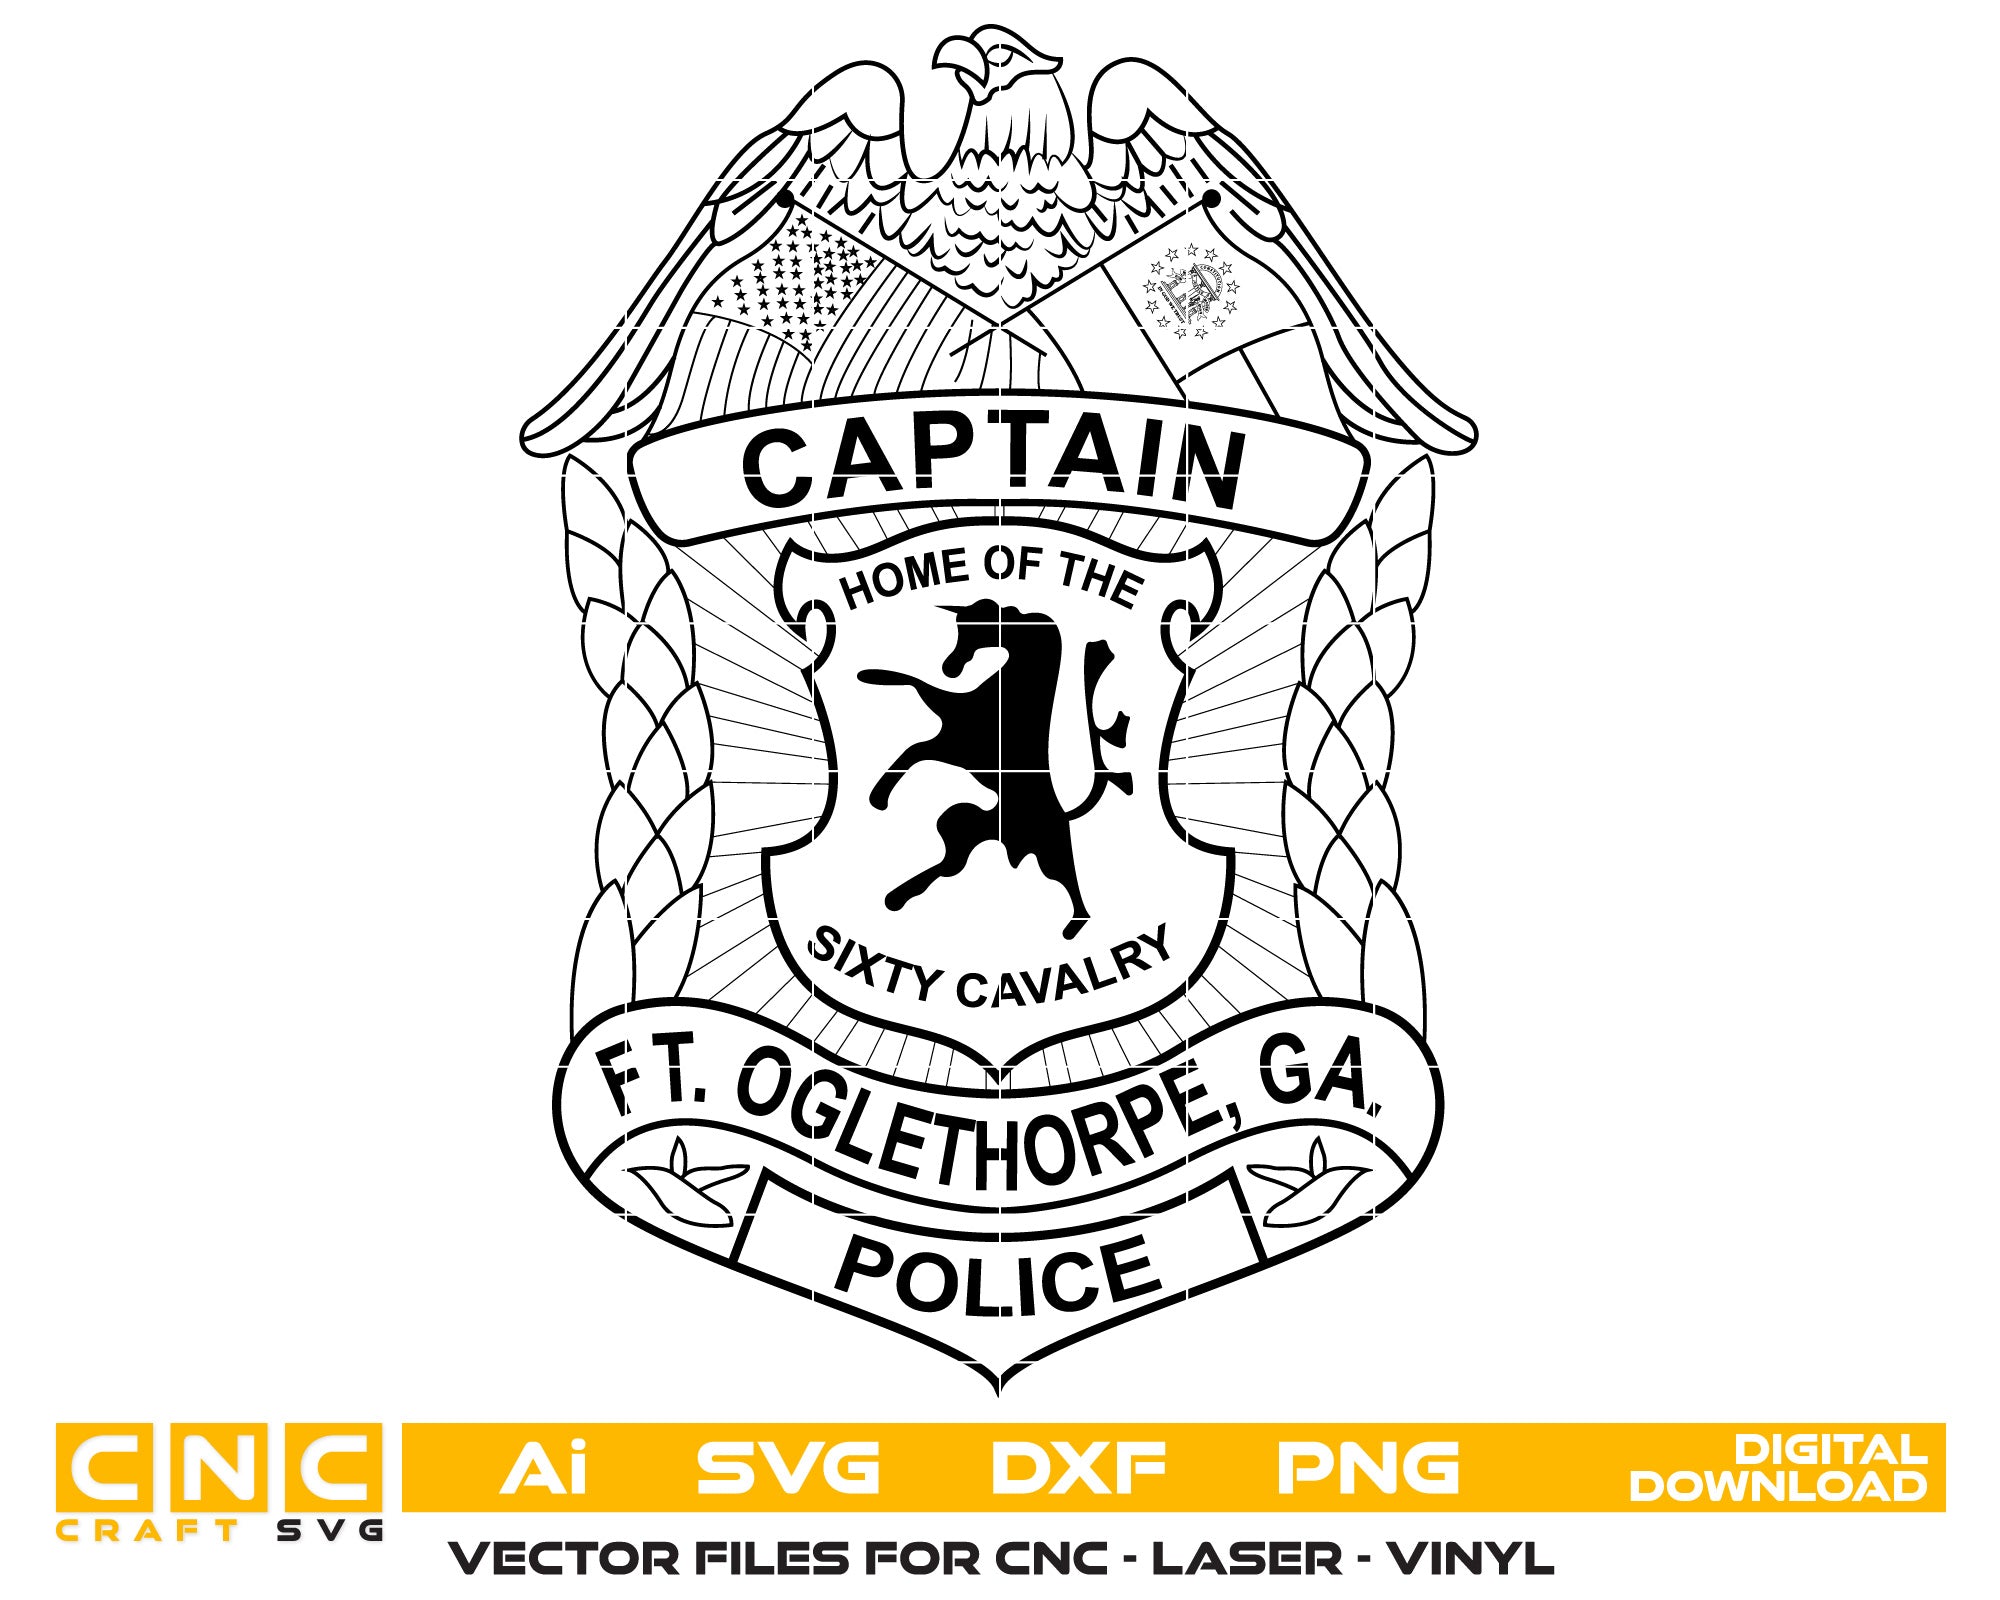 Fort Oglethorpe Police Captain Badge Vector Art, Ai,SVG, DXF, PNG, Digital Files